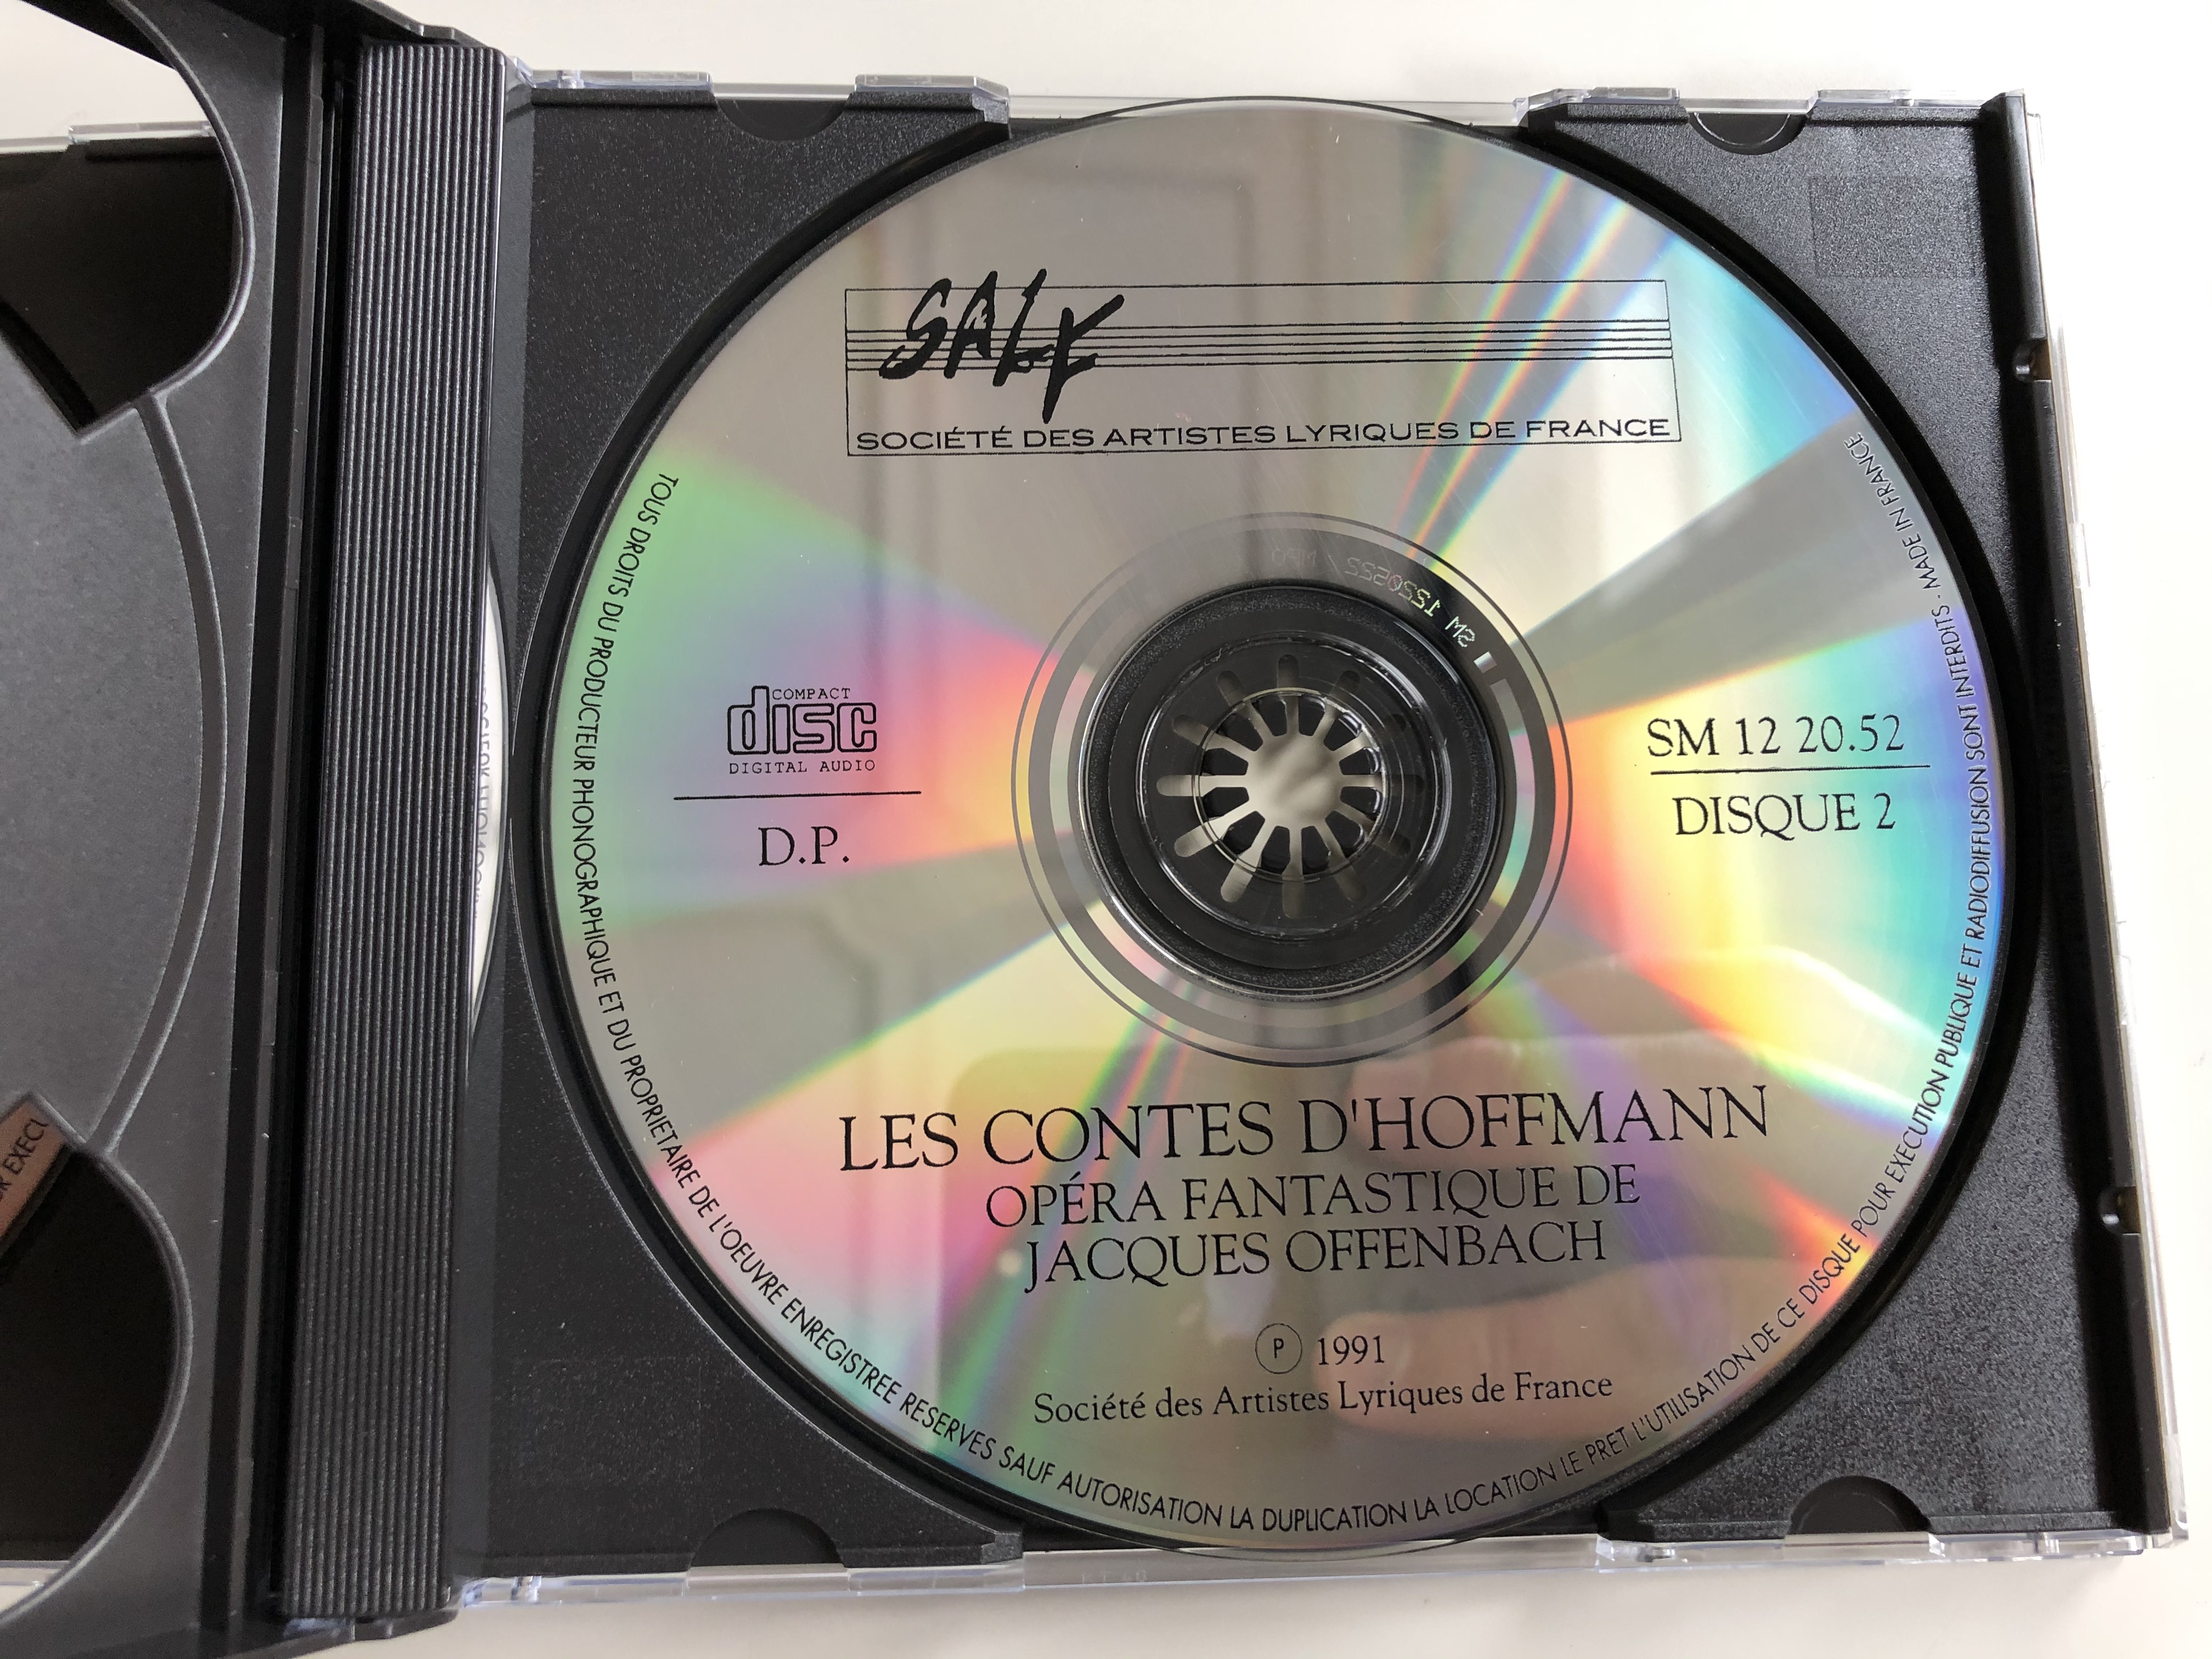 les-contes-d-hoffmannles-contes-d-hoffmann-opera-fantastique-de-jacques-offenbach-direction-musicale-luc-azoura-orchestre-symphonique-pro-arte-de-paris-soci-t-des-artistes-lyriques-de-france-3-.jpg